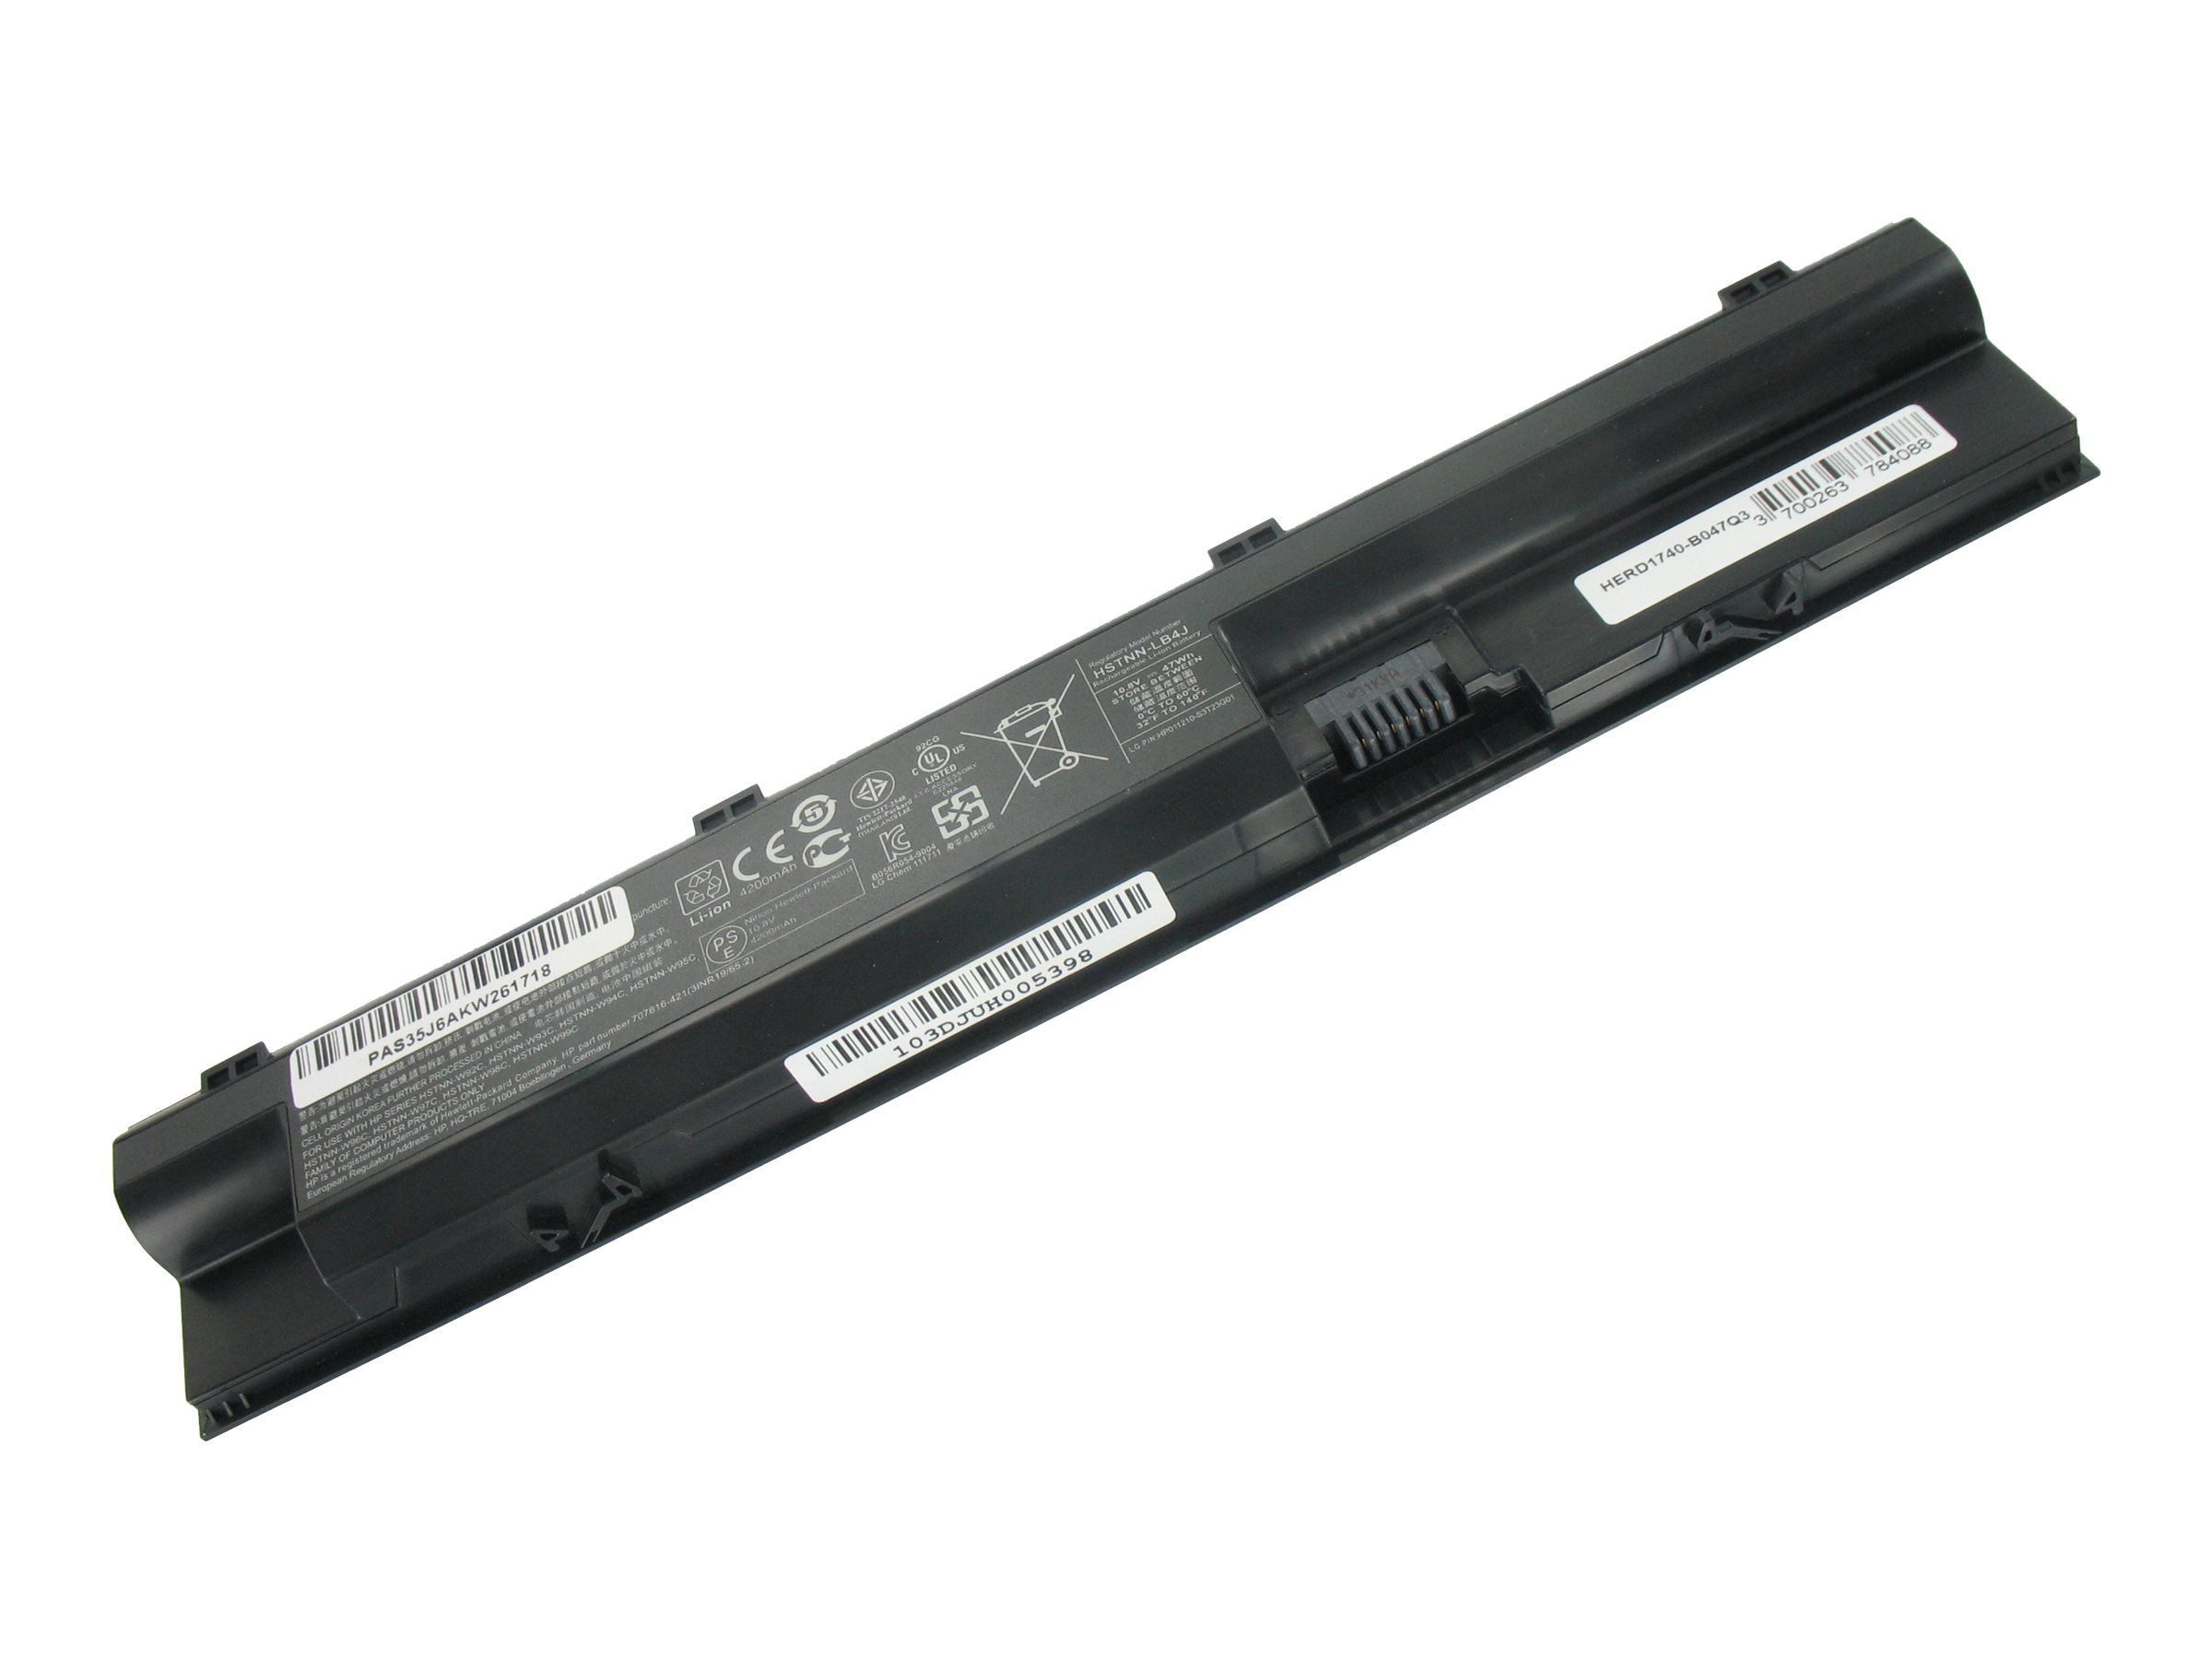 DLH - Batterie de portable (standard) (équivalent à : HP H6L26AA, HP H6L27AA, HP FP06, HP FP09, HP HSTNN-LB4K, HP HSTNN-W92C, HP FP06XL, HP FP09XL, HP H6L27ET) - Lithium Ion - 6 cellules - 5200 mAh - 56 Wh - noir - pour HP ProBook 440 G0, 440 G1, 450 G0, 450 G1, 455 G1, 470 G0, 470 G1, 470 G2 - HERD1740-B056Q3 - Batteries spécifiques